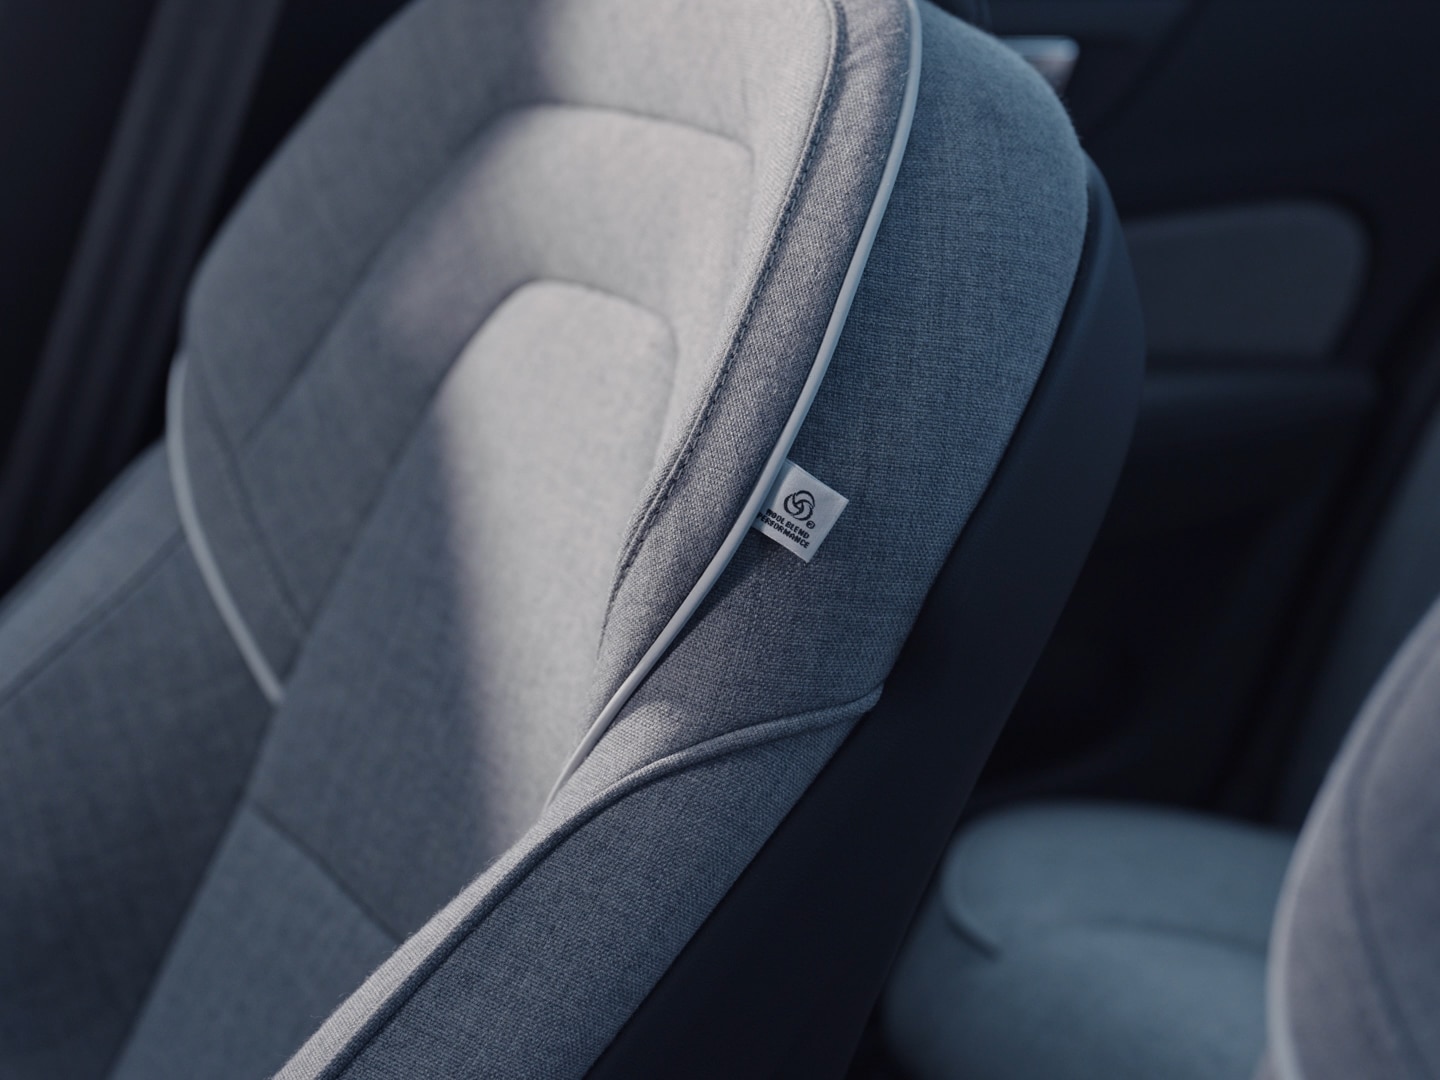 Volvo S60 Recharge salona tuvplāns ar vilnas maisījuma sēdekļiem bez ādas izmantošanas.